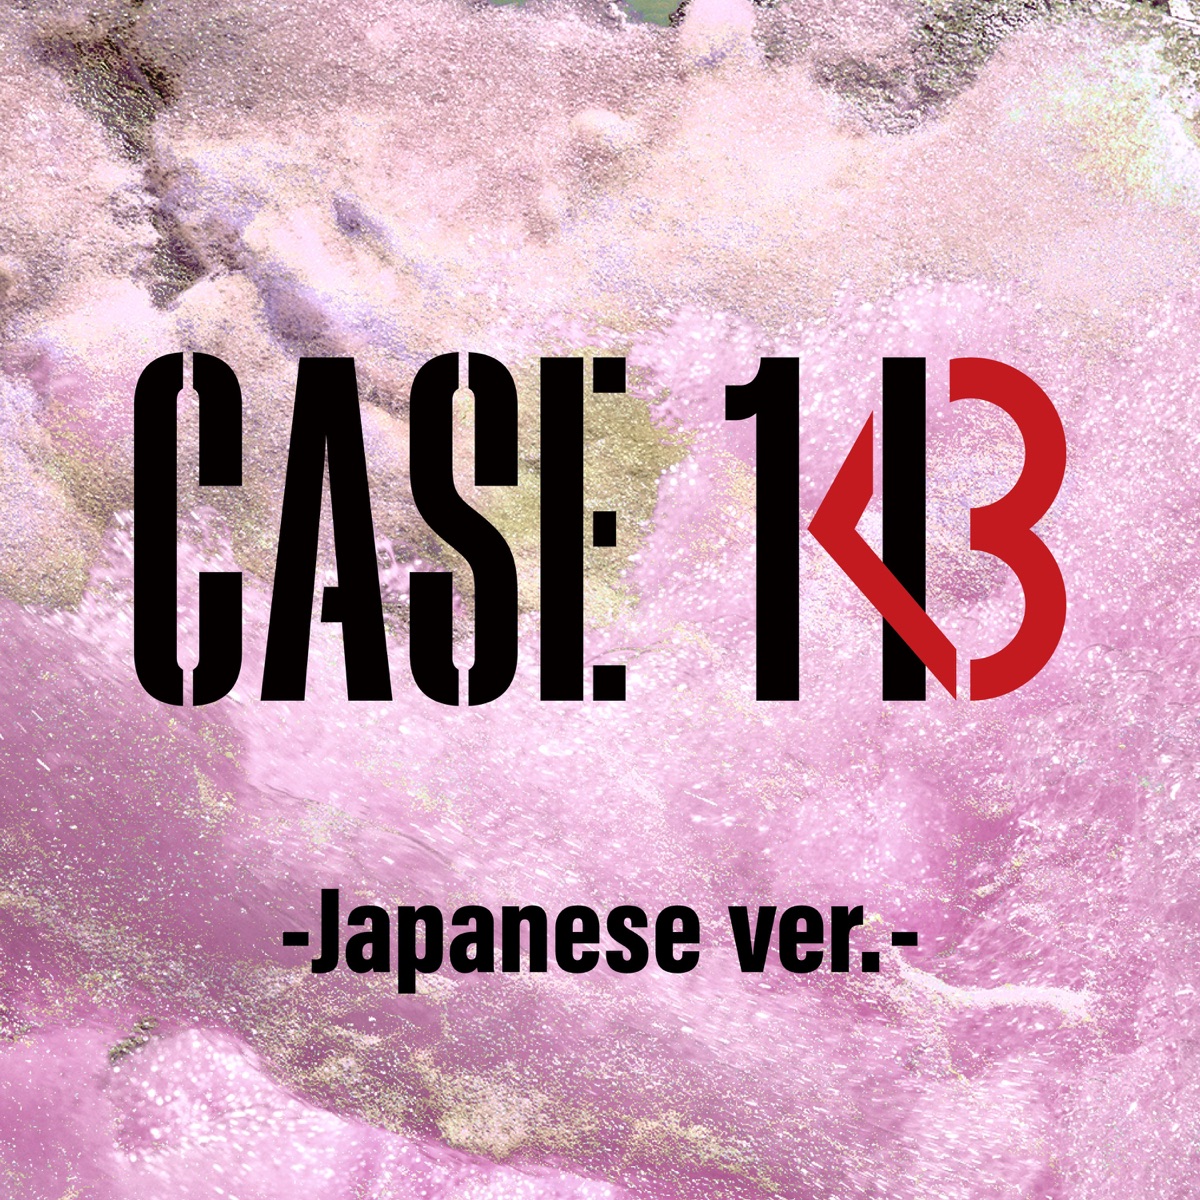 『Stray Kids - CASE 143 -Japanese ver.-』収録の『CASE 143 -Japanese ver.-』ジャケット